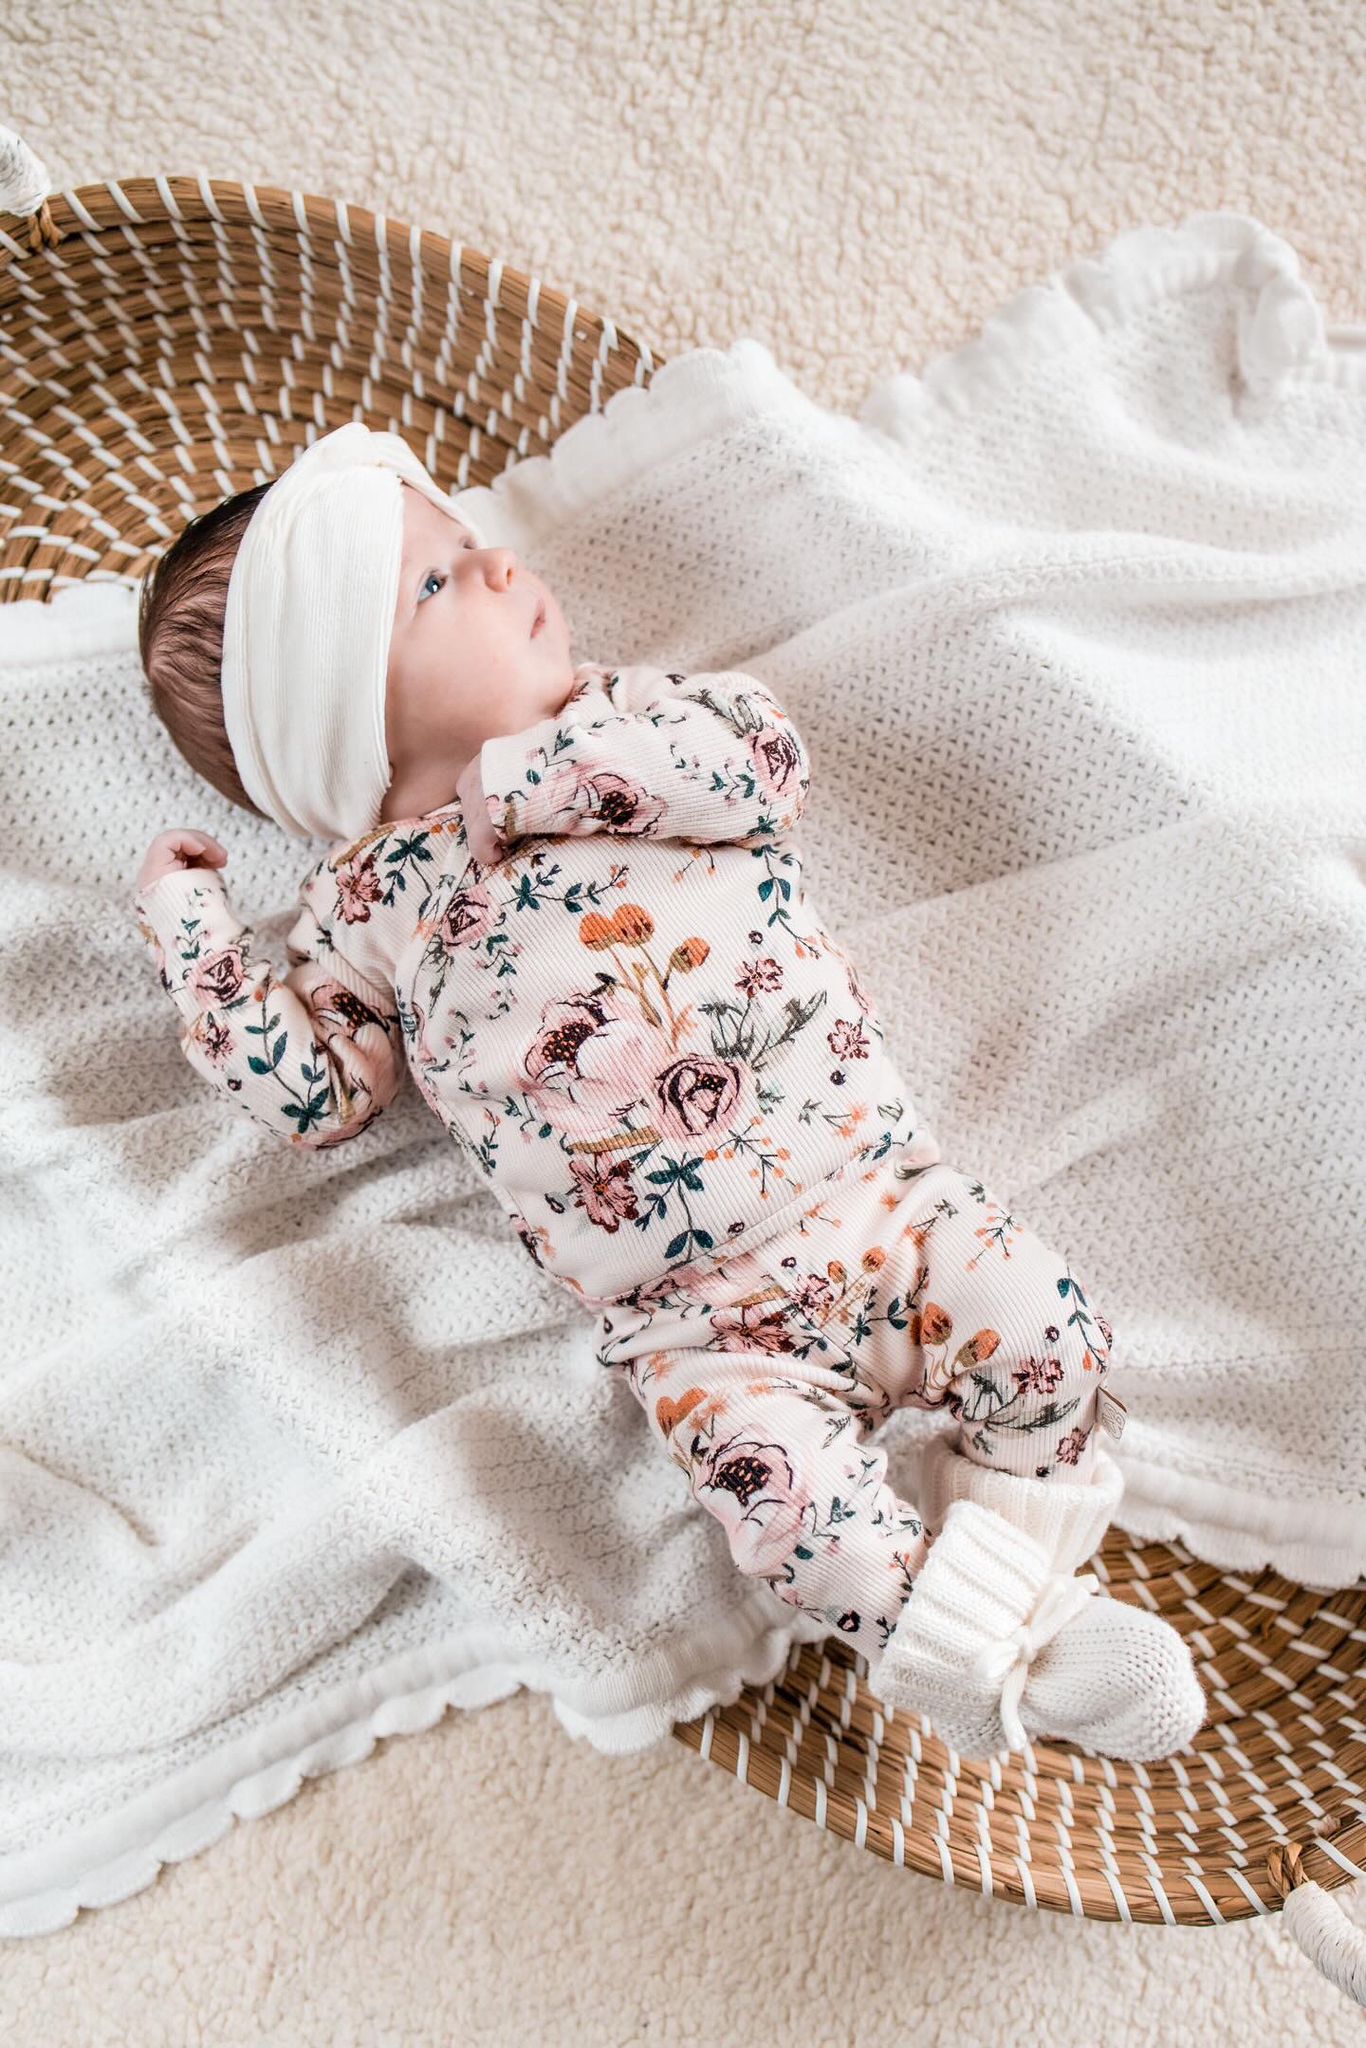 Een serene baby, gekleed in een gebloemd OEKO TEX-gecertificeerd katoenen Broekje Blamy-onesie van Yumi Baby en een witte hoofdband, ligt comfortabel op een gebreide deken in een geweven mand en staart verwonderd omhoog.